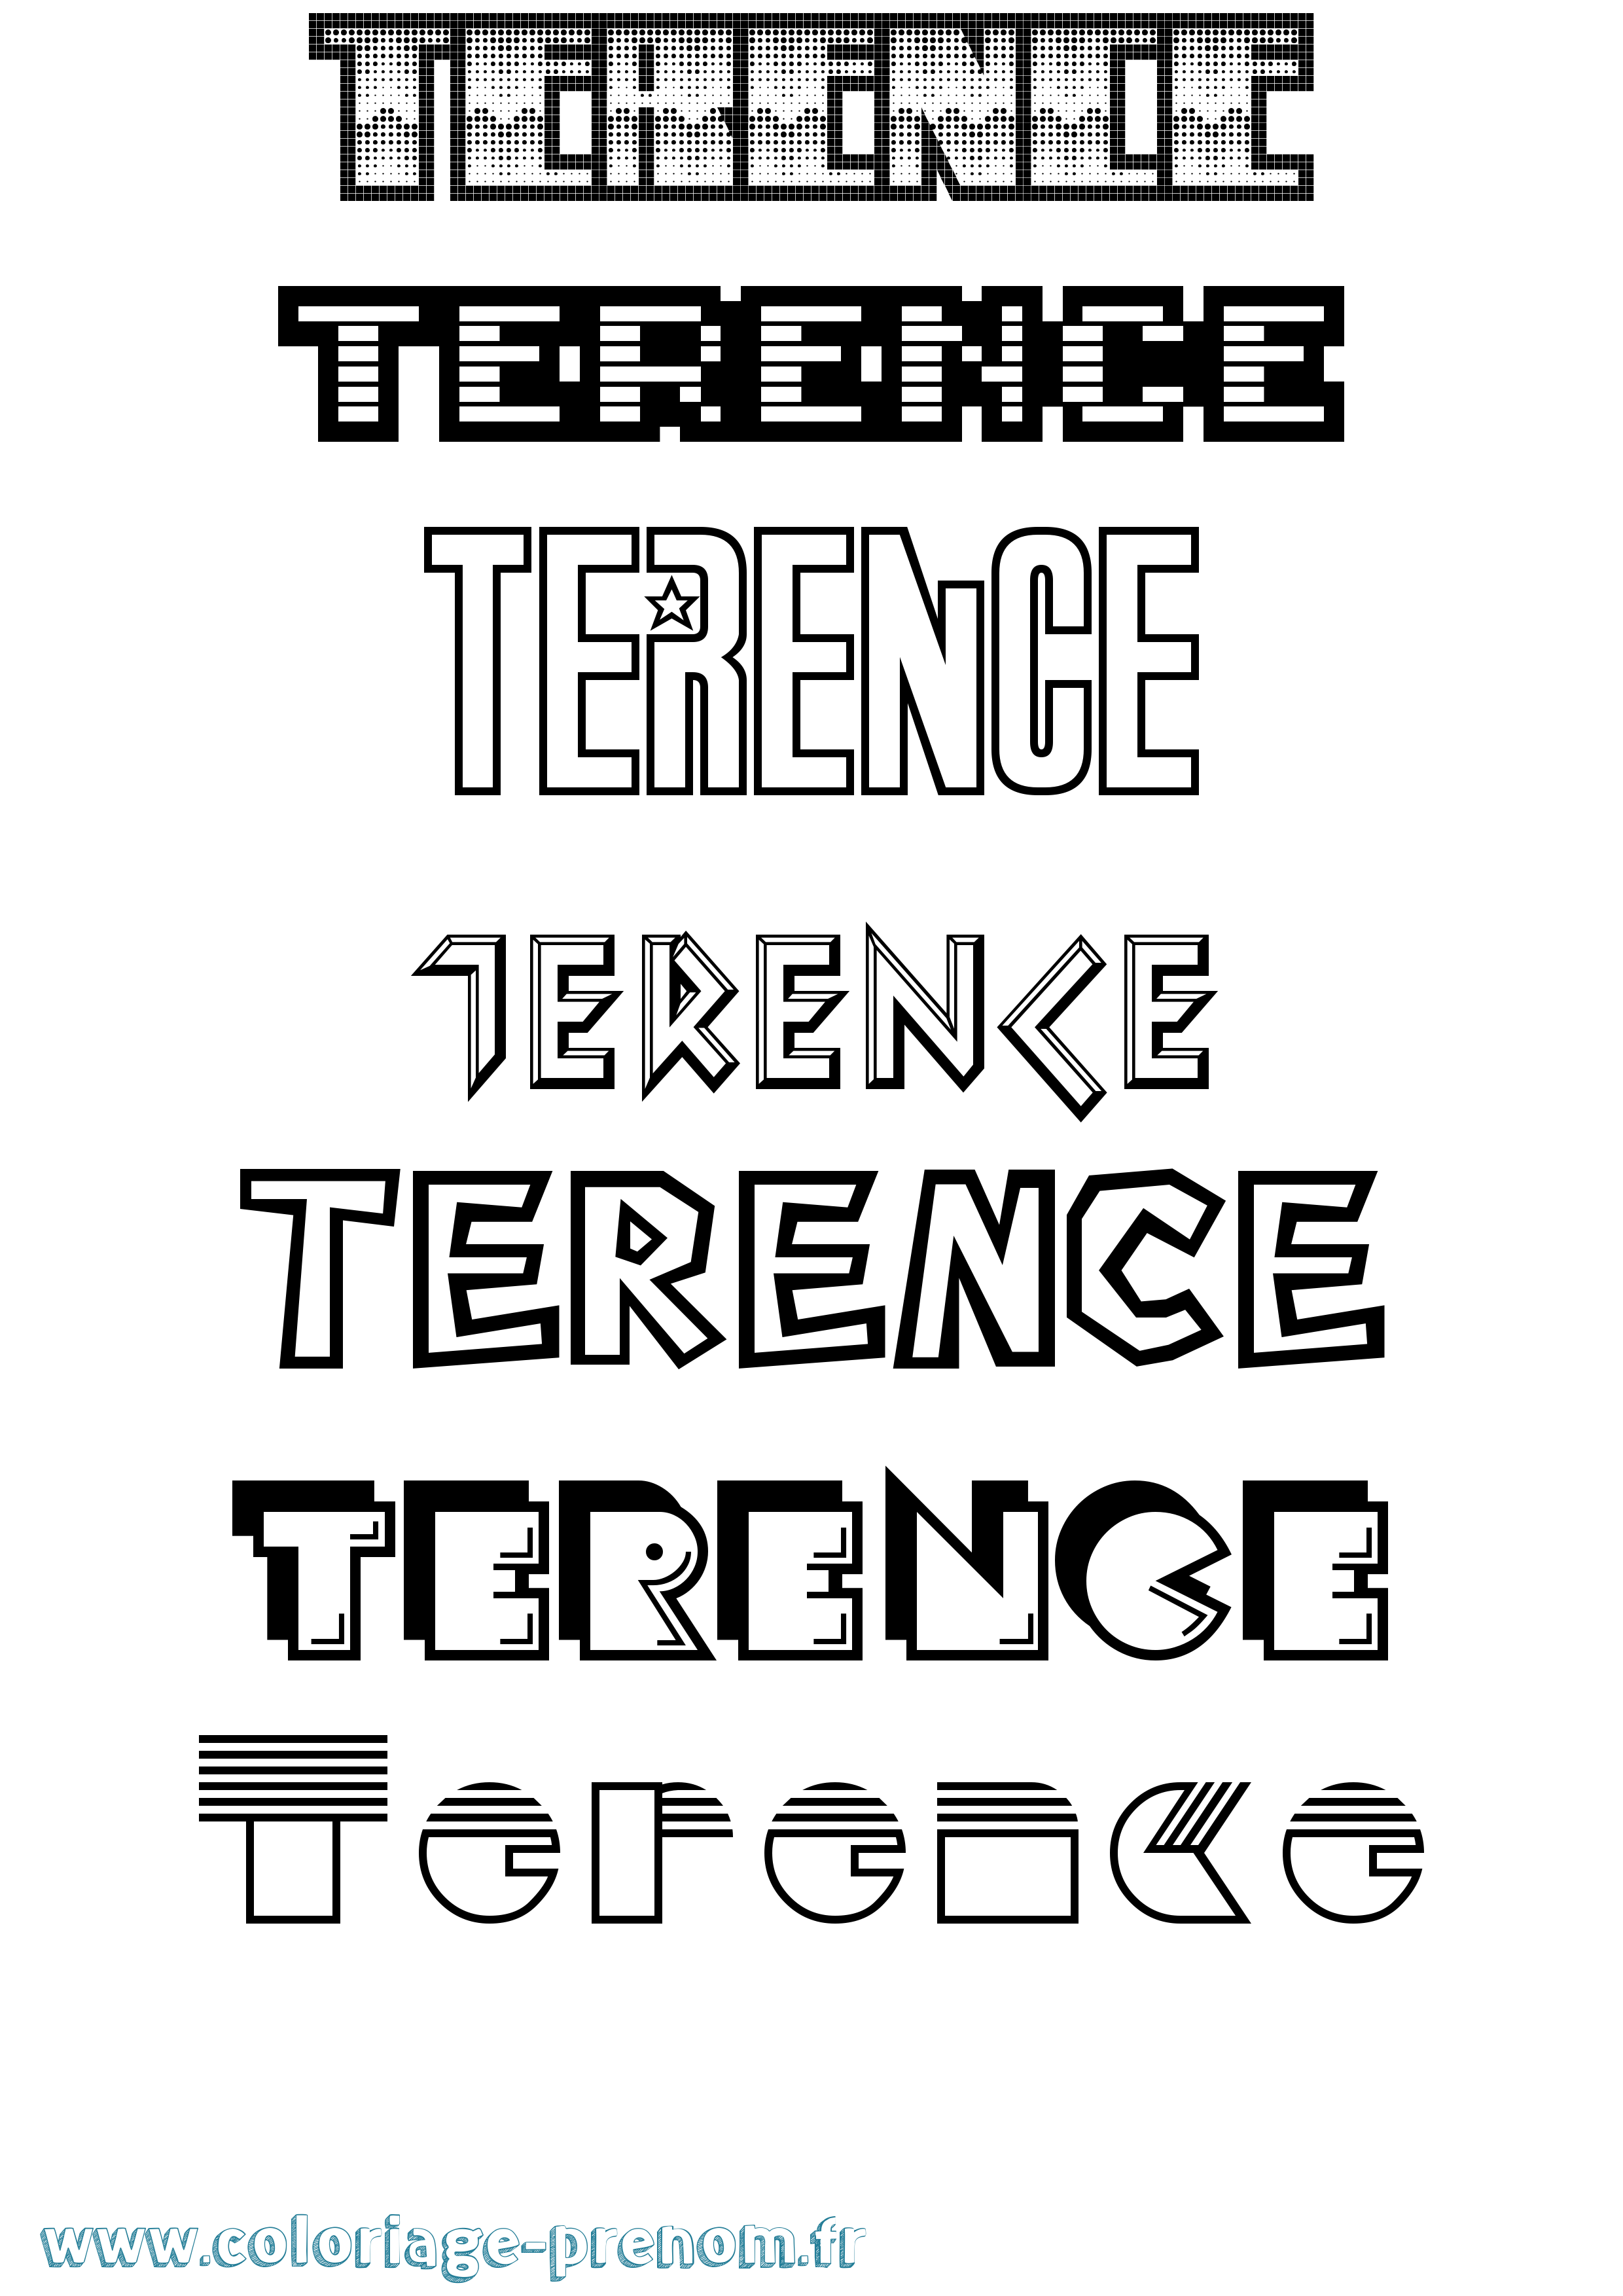 Coloriage prénom Terence Jeux Vidéos